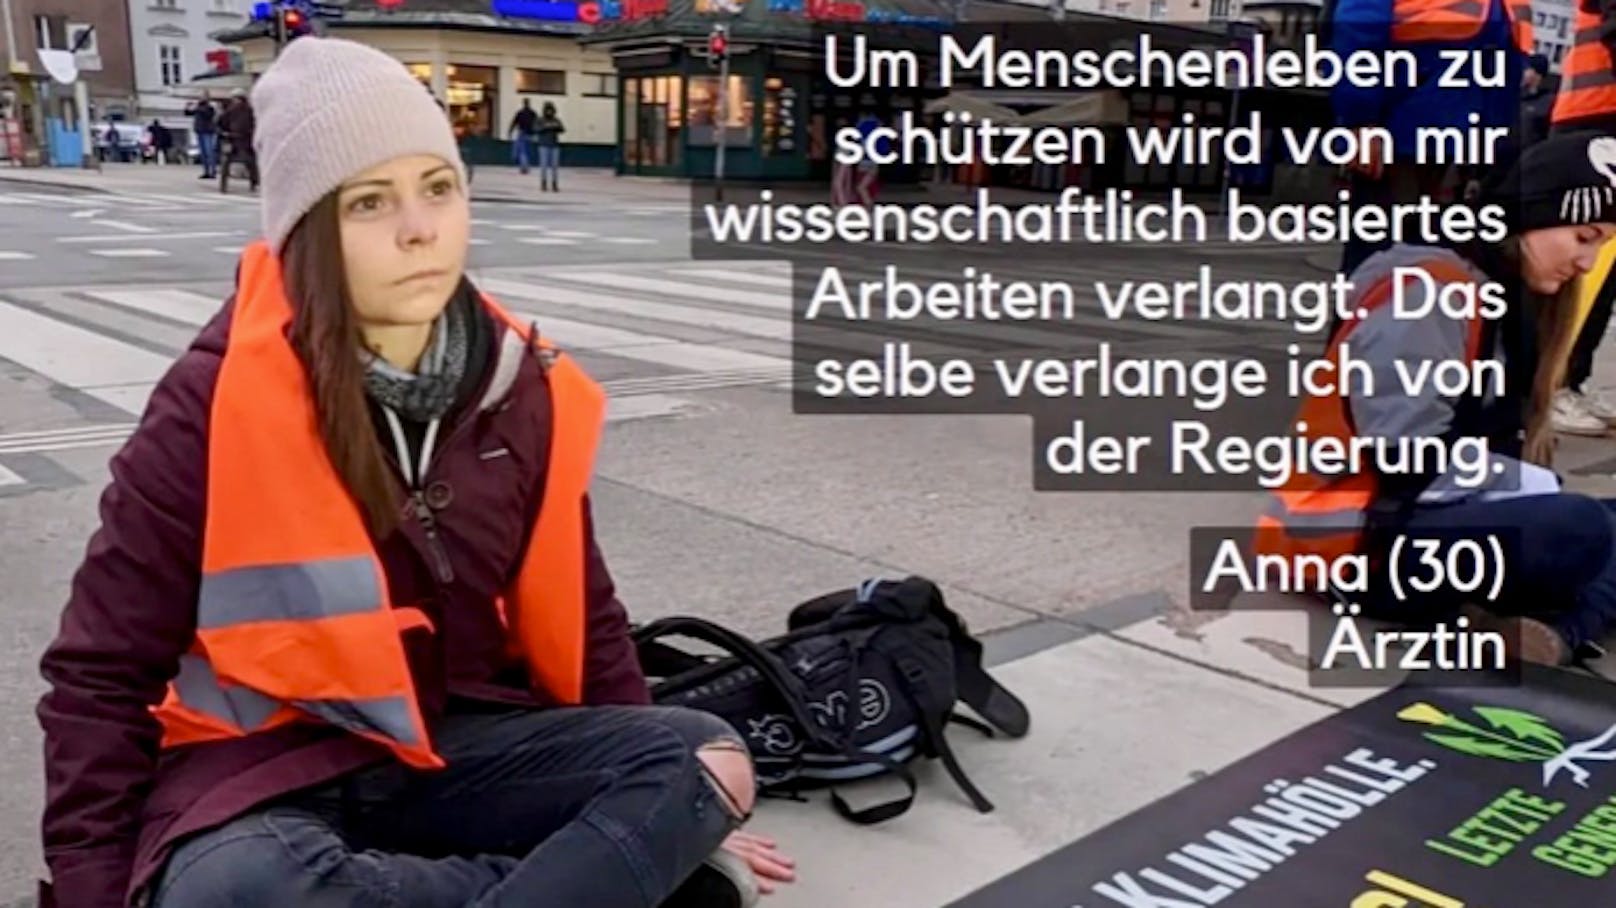 Die Aktivistin Anna musste nach der Klebeaktion am Naschmarkt im Jänner ins Polizeigewahrsam und dort zum "Body Scan"